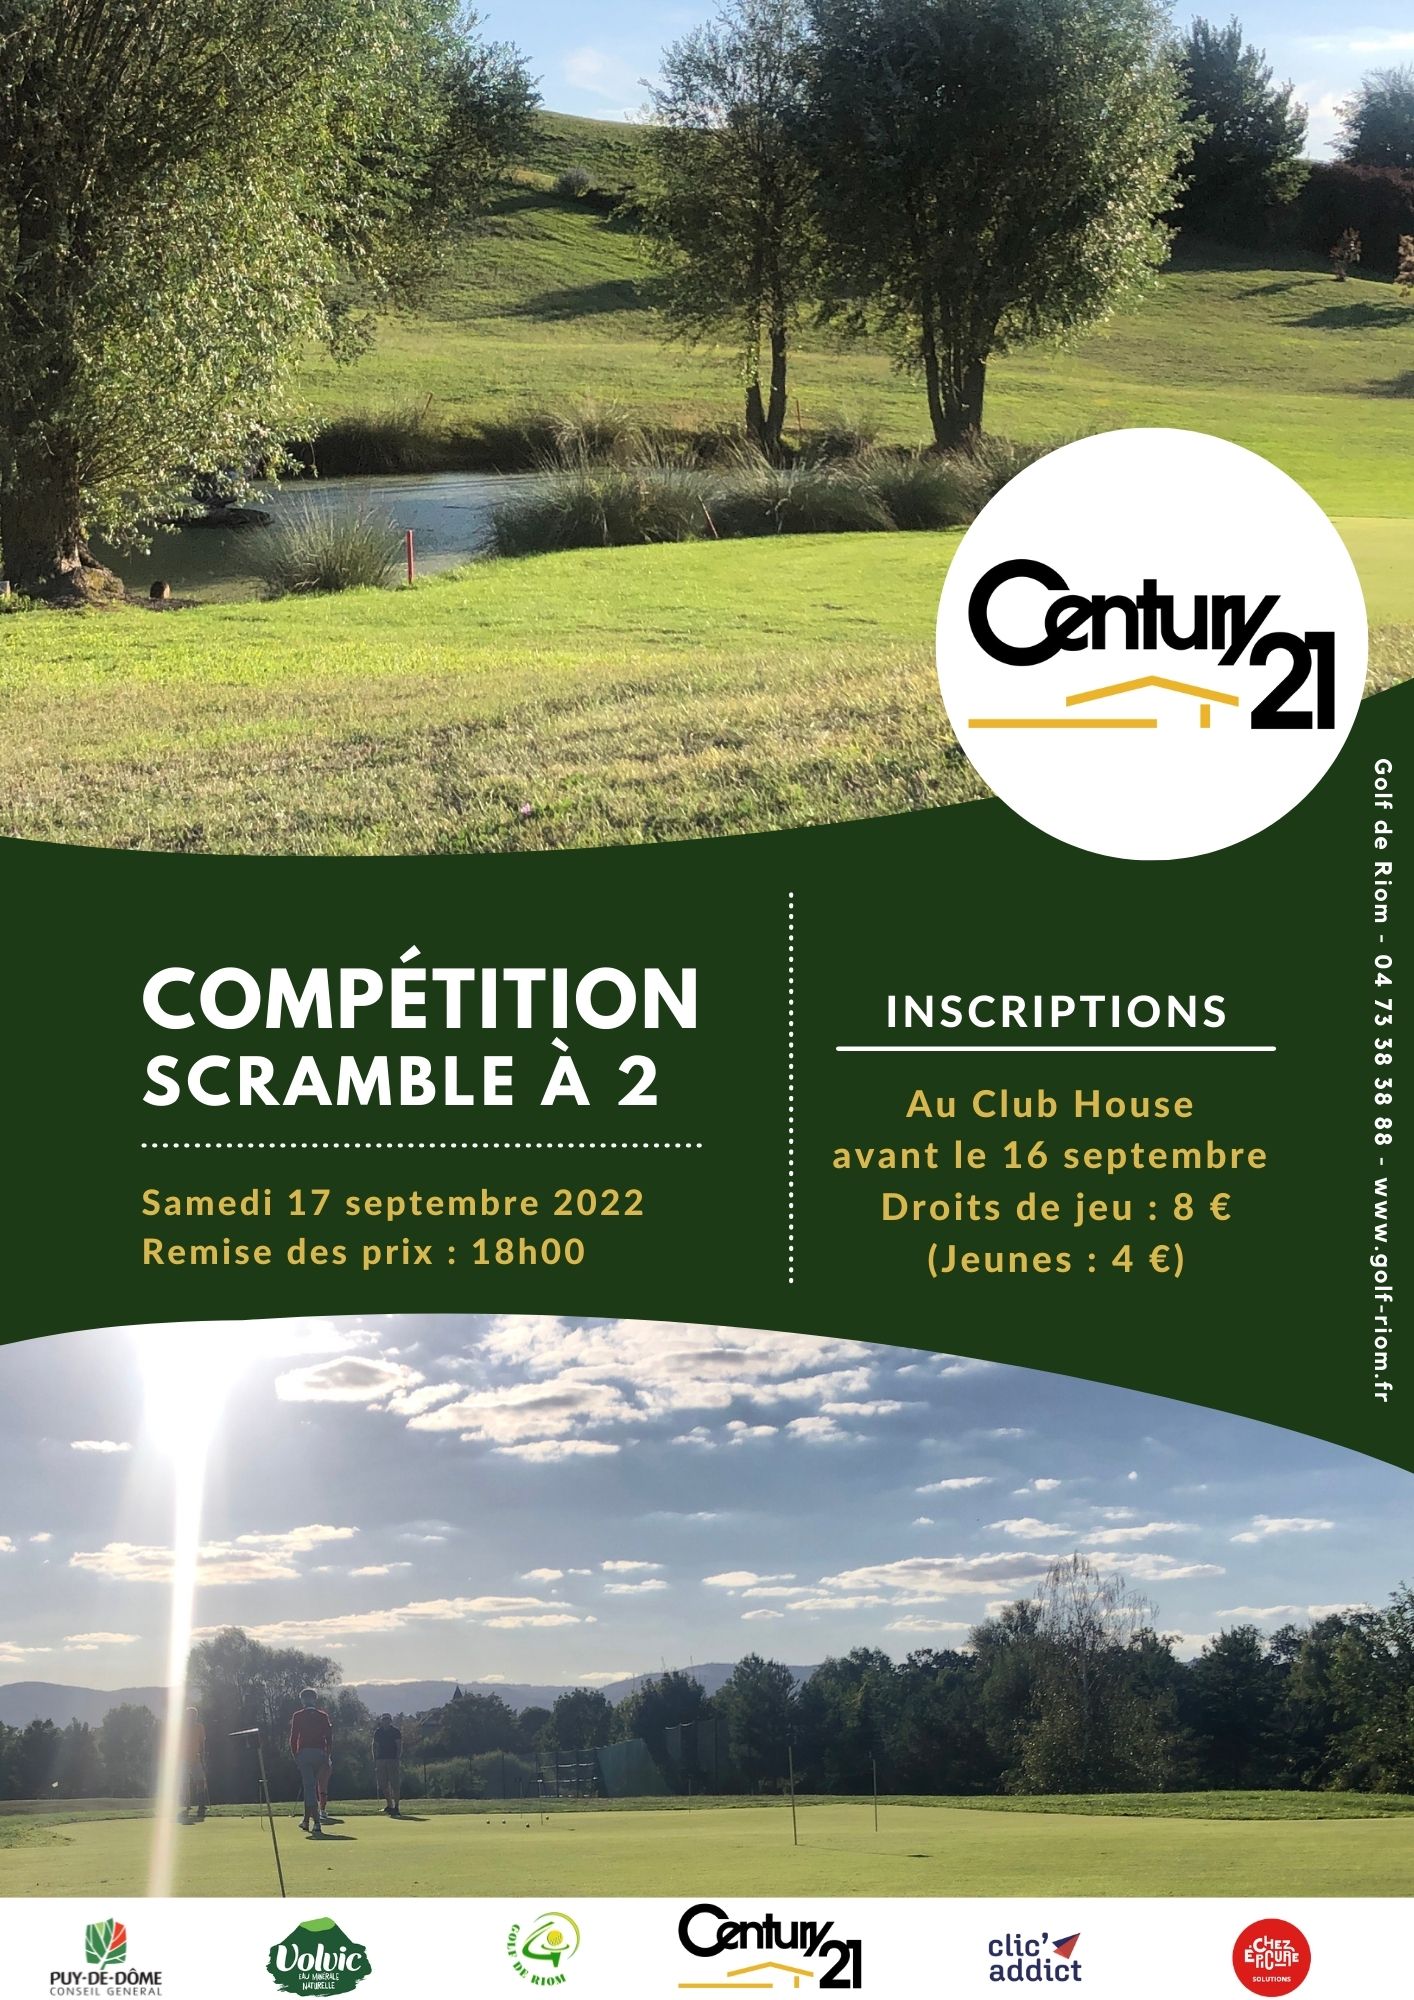 Compétition – Scramble Century 21